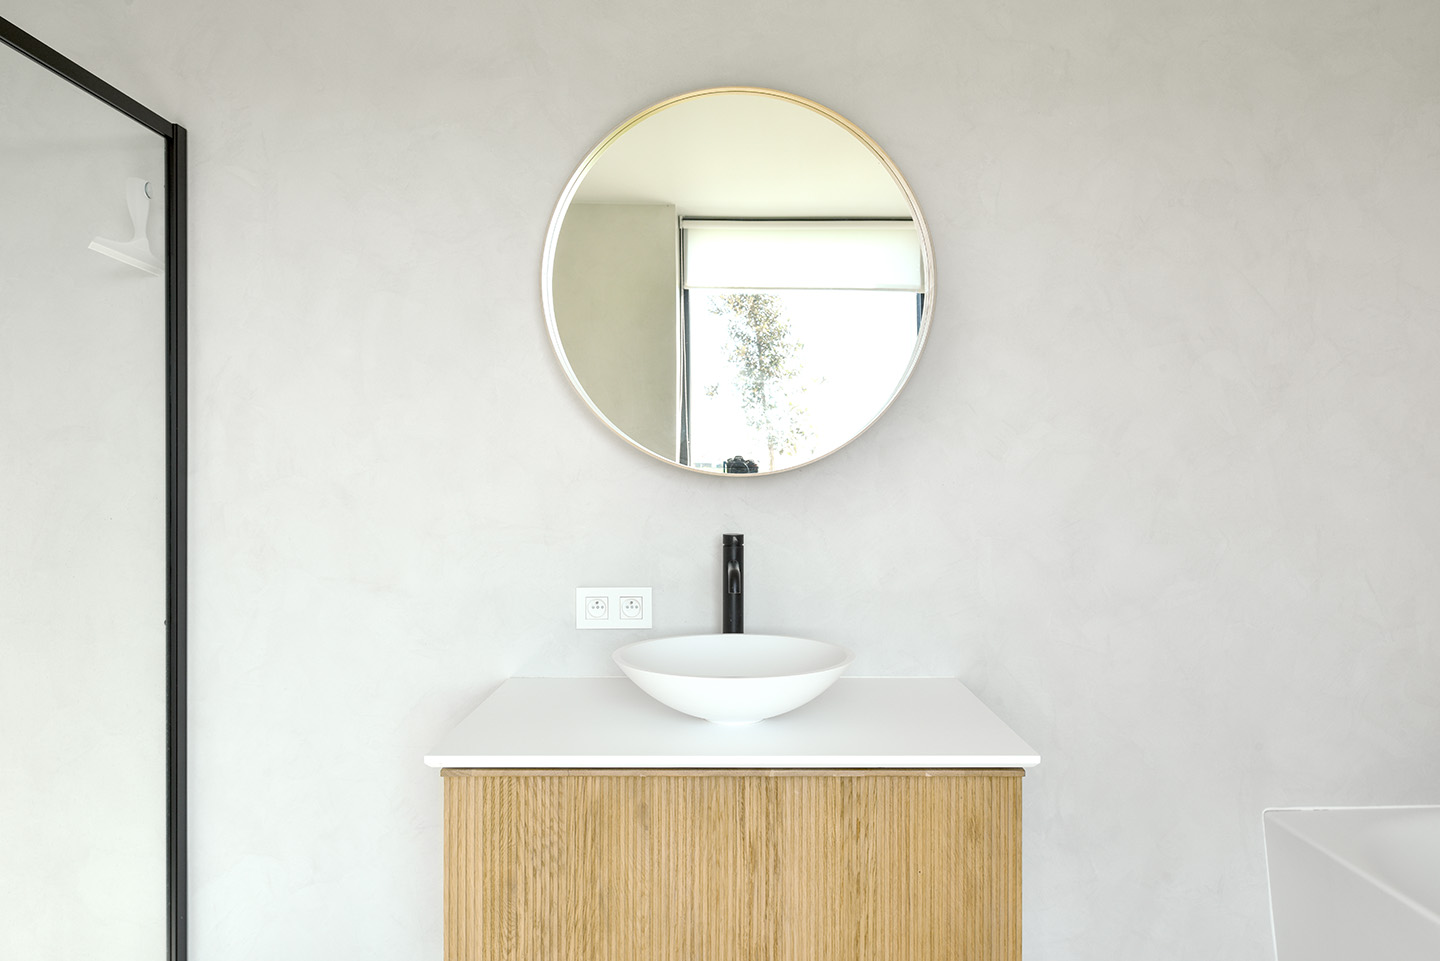 Wastafel in badkamer in minimalistische look met natuurlijke texture zoals Mortex®, Aqua Sensa® en beton ciré